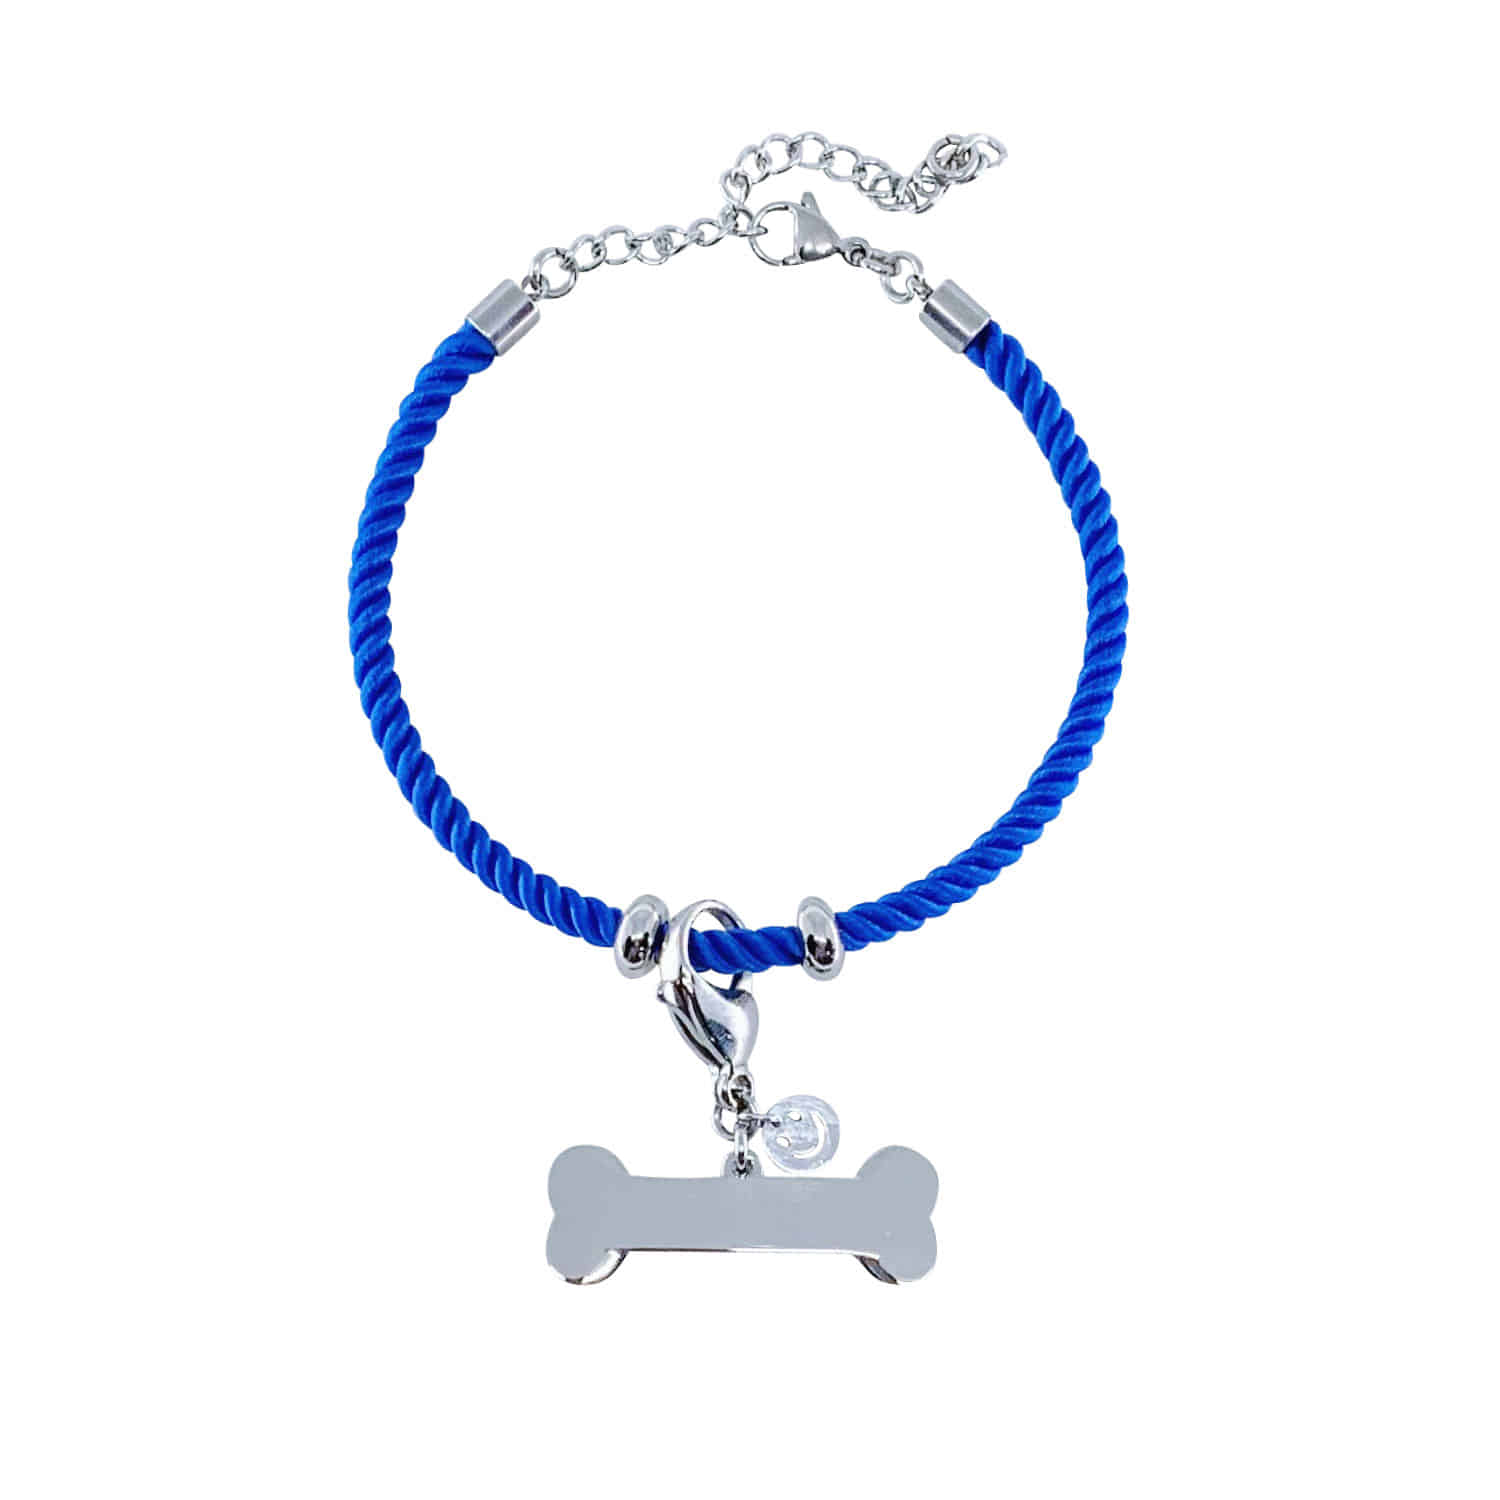 뼈다귀 로프 인식표 목걸이- Royal blue